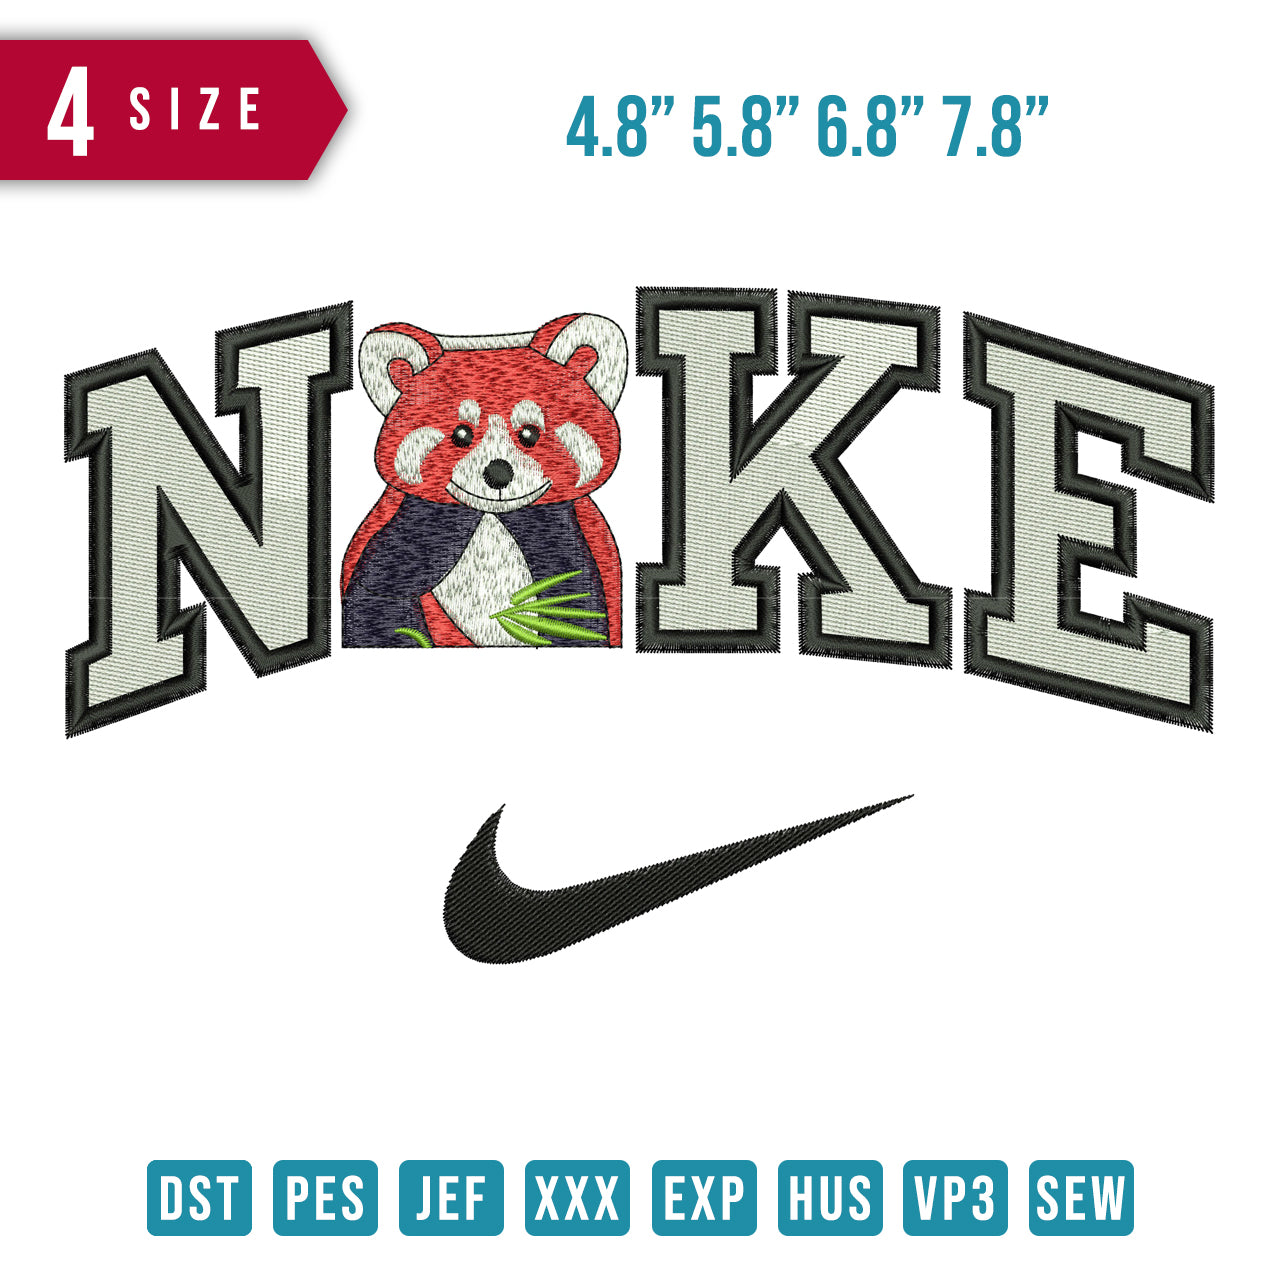 Nike red panda